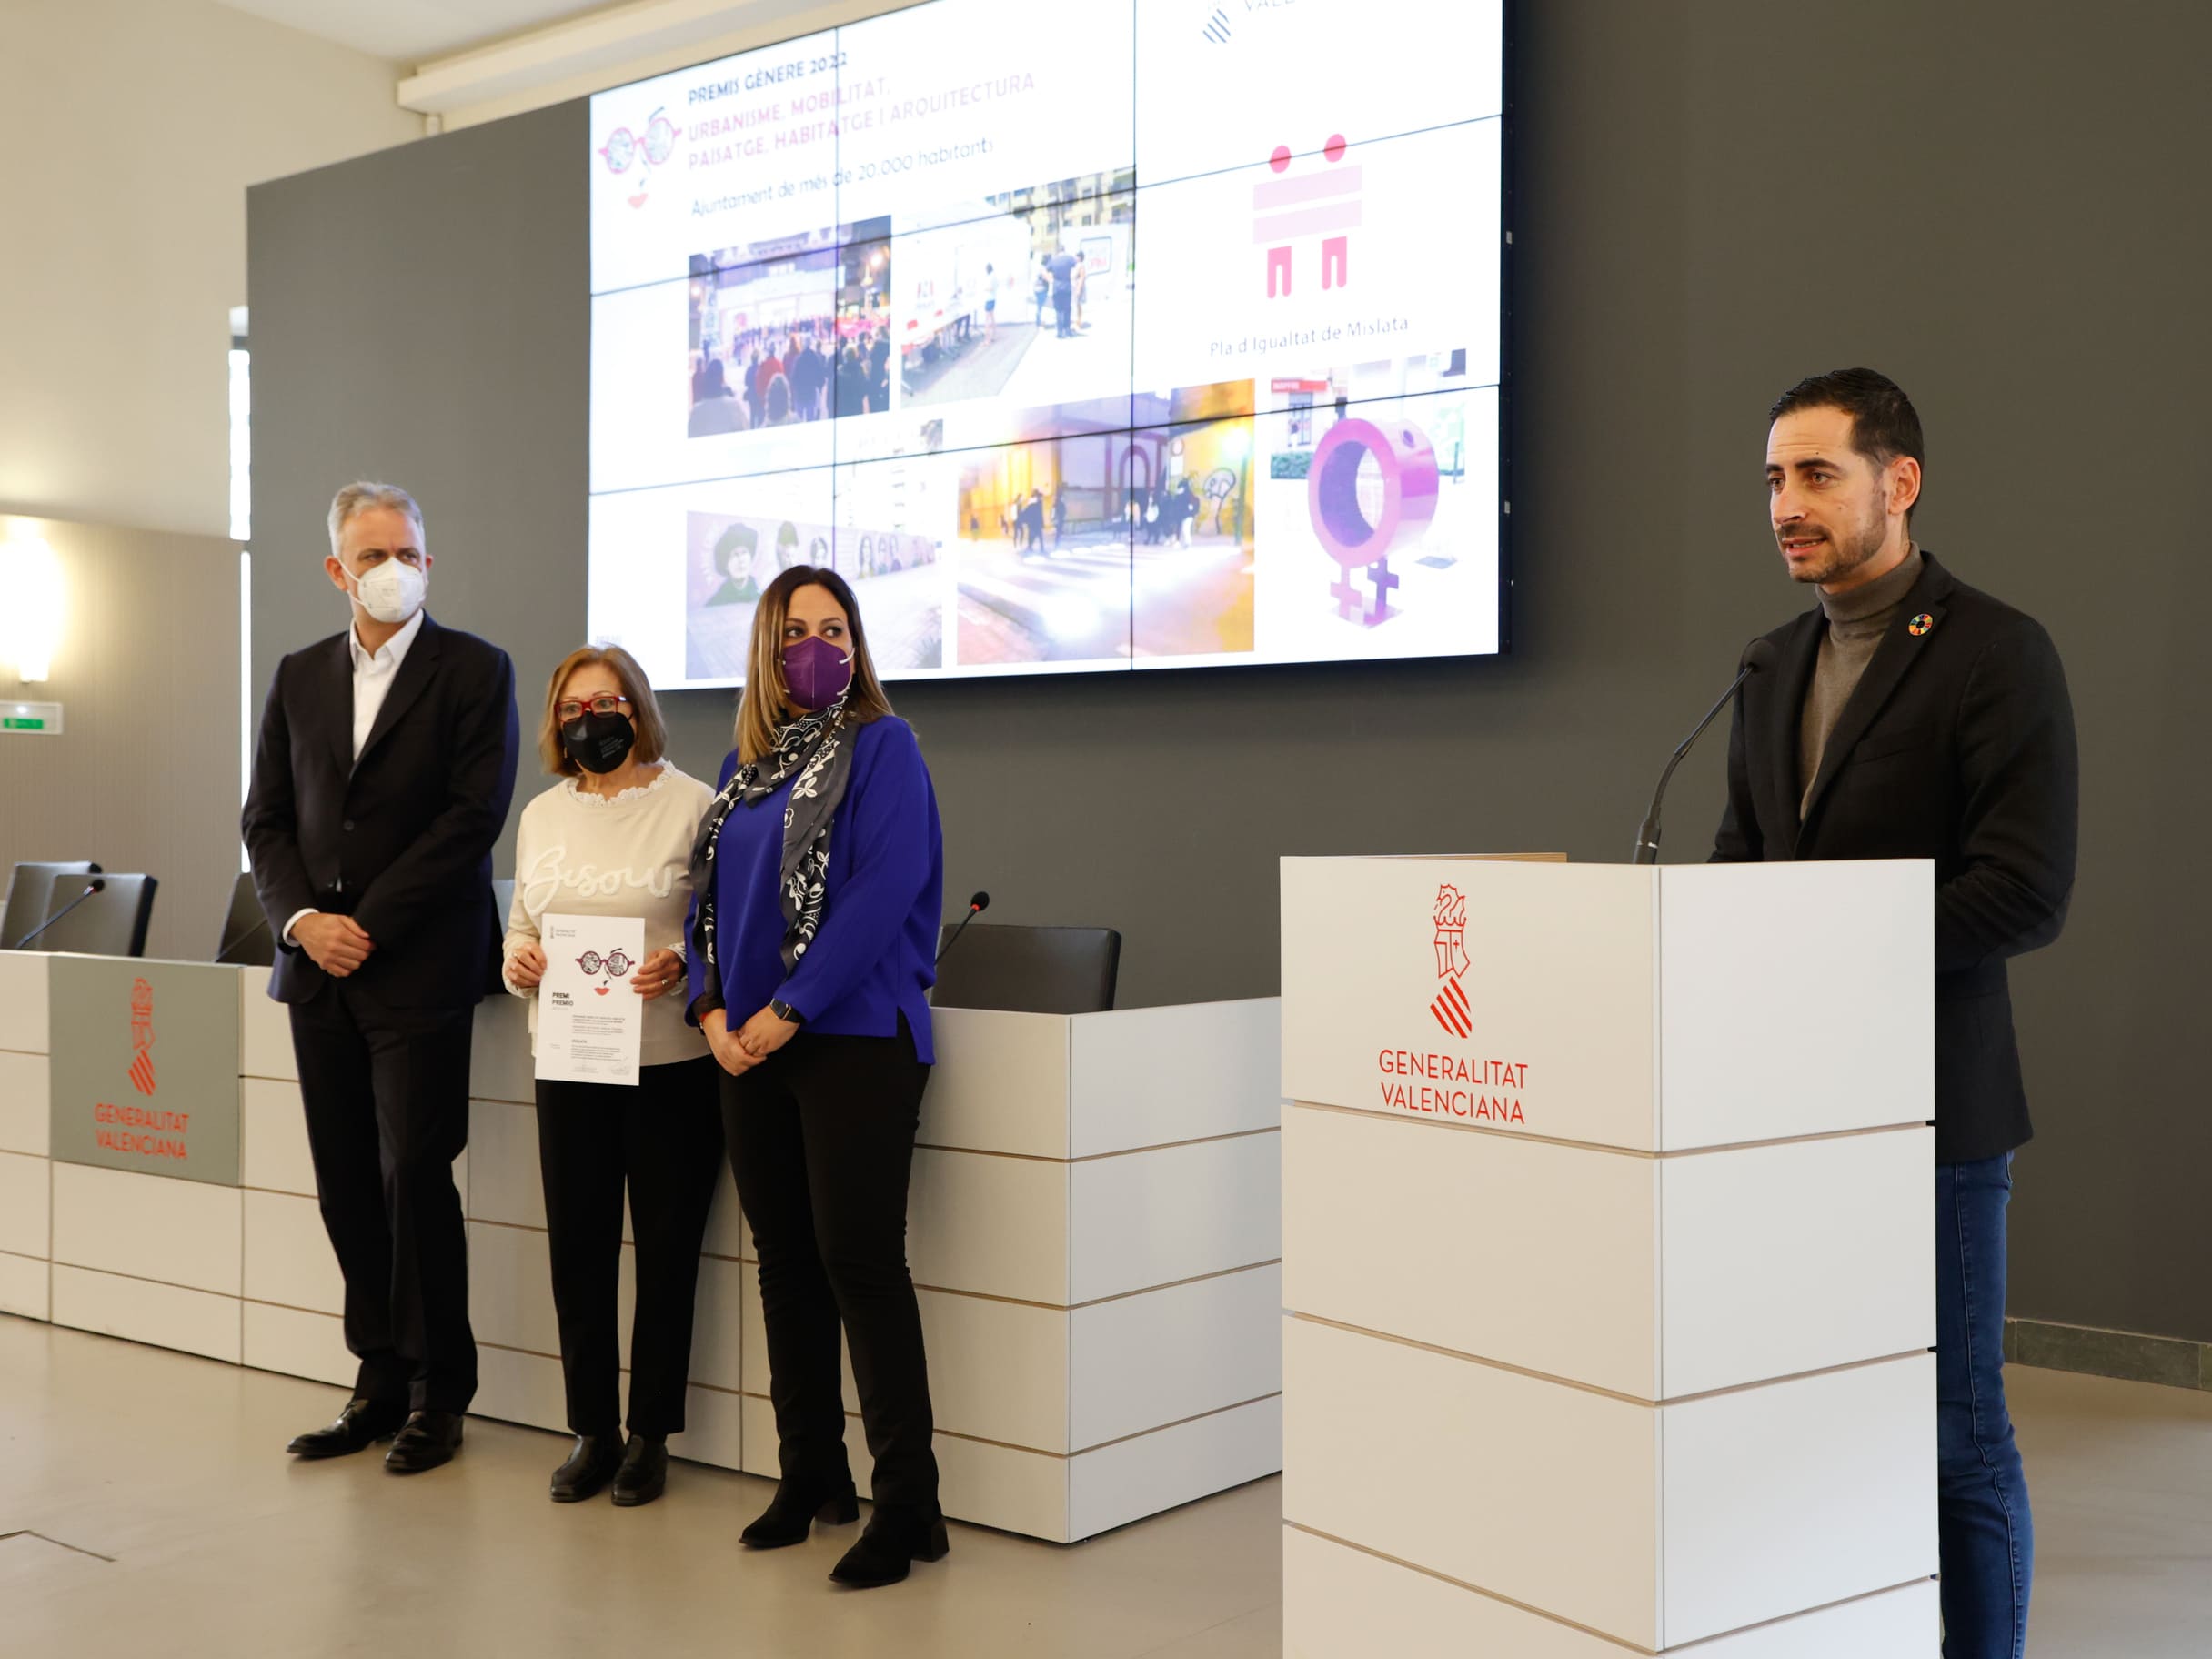 La Generalitat premia a Mislata por integrar la perspectiva de género en su diseño de ciudad